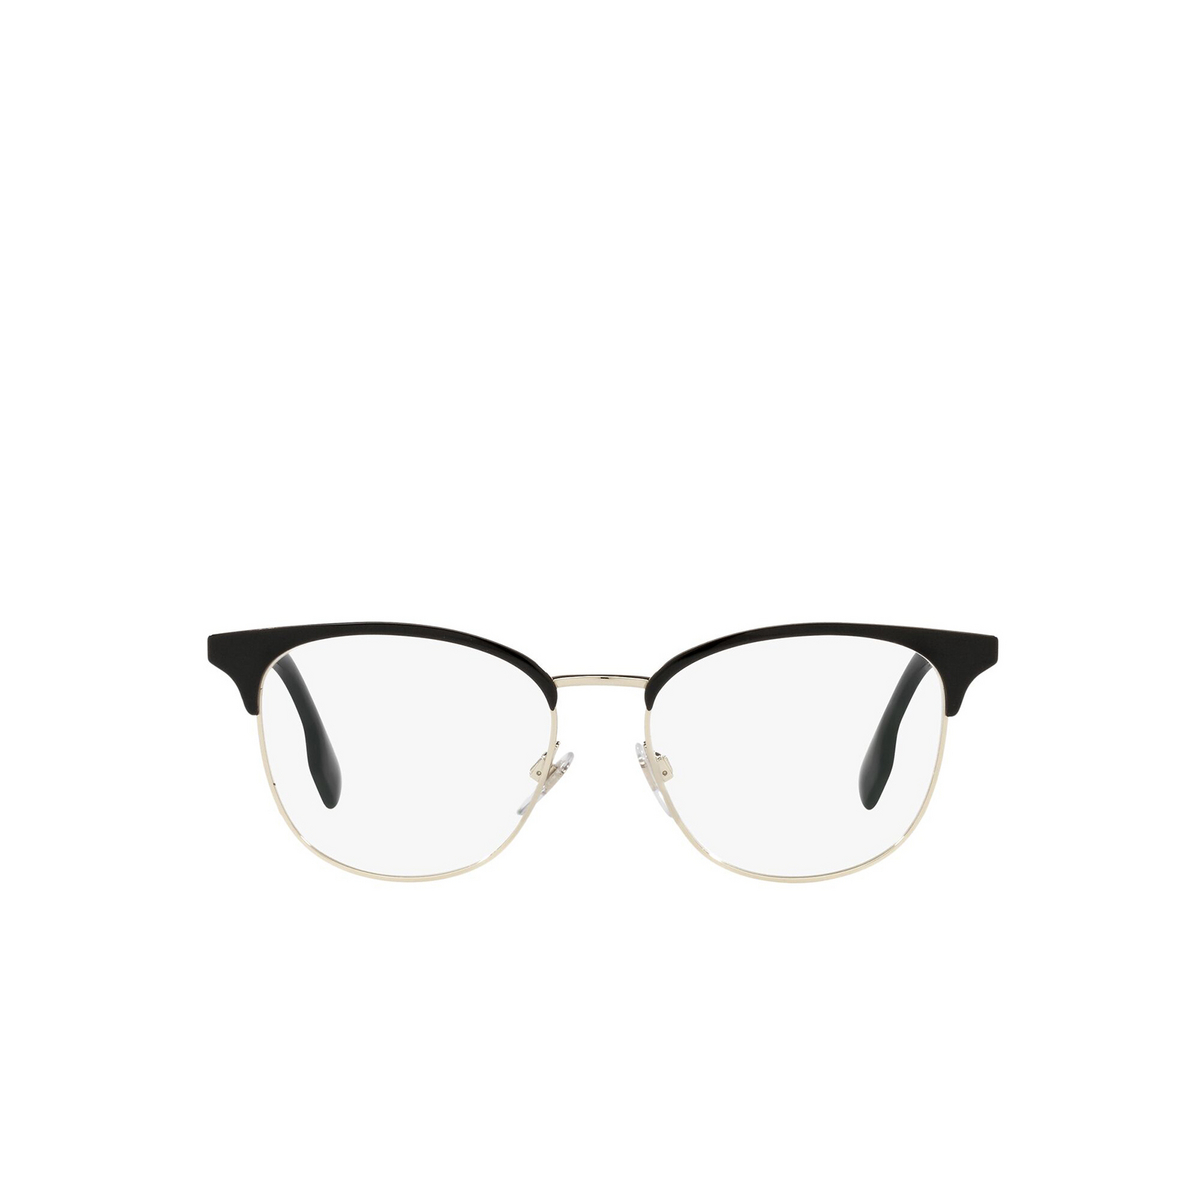 Burberry SOPHIA Eyeglasses 1109 Light Gold / Black - front view